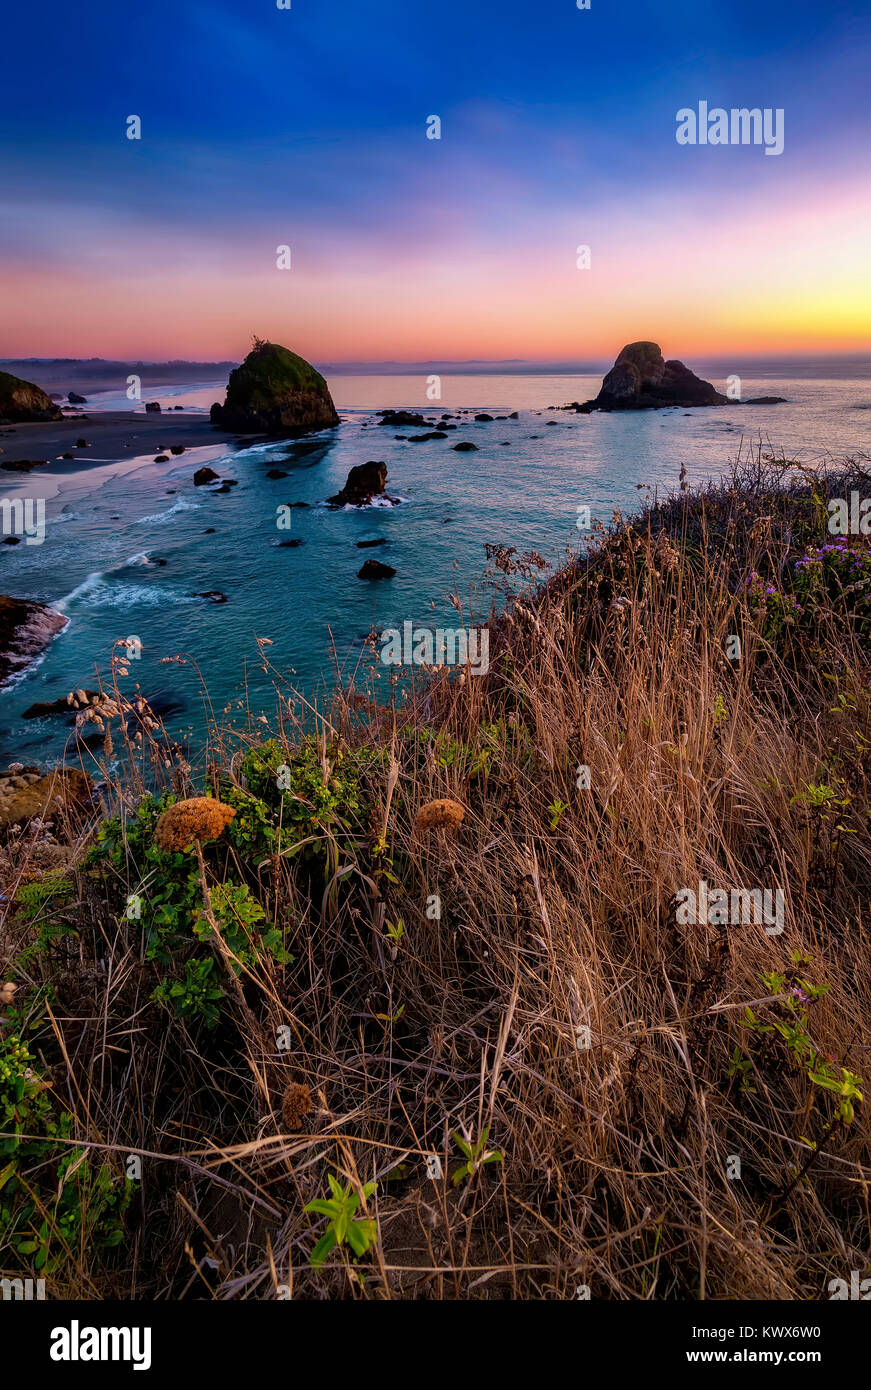 El color de la imagen de una hermosa puesta de sol con vistas al Océano Pacífico en el norte de California. Foto de stock